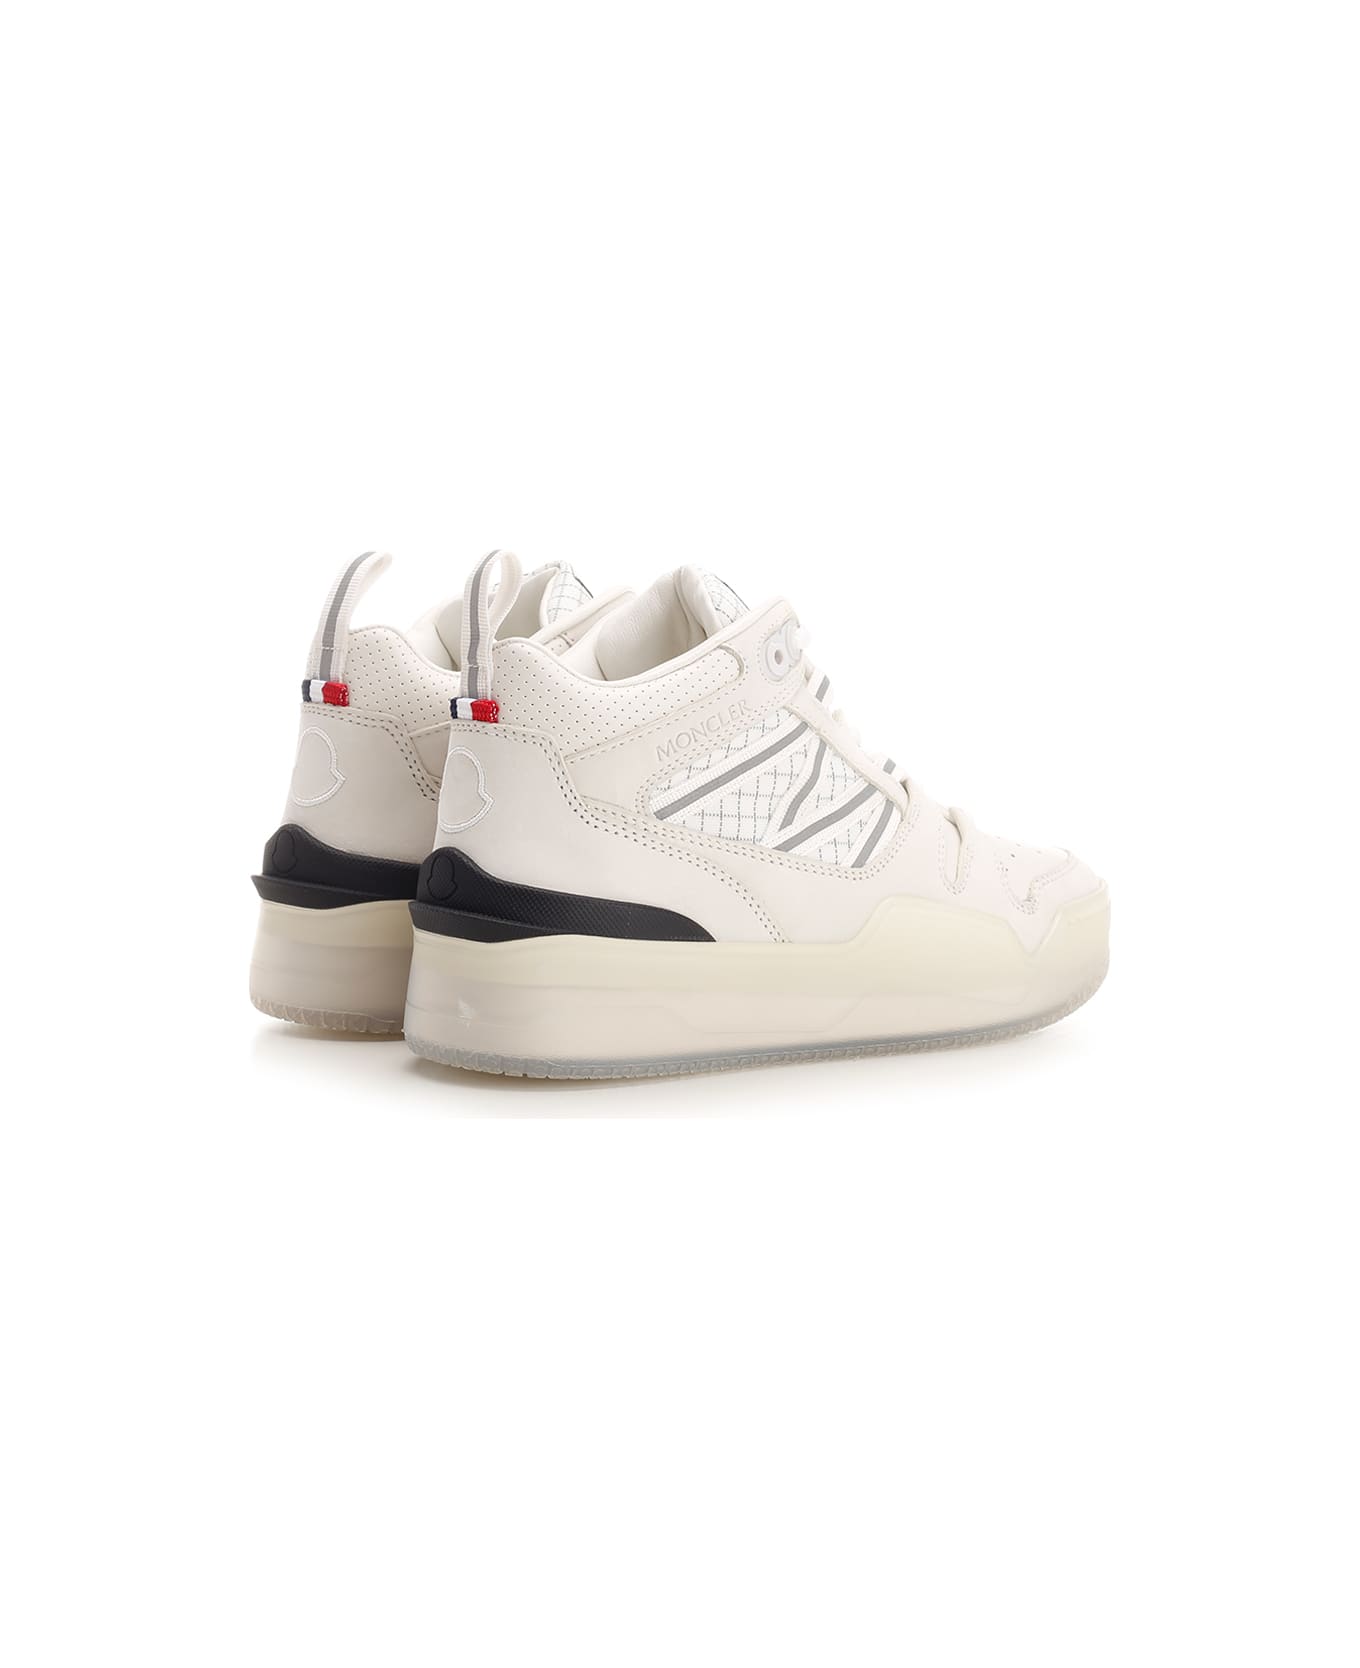 Moncler 'pivot' High-top Sneakers - White